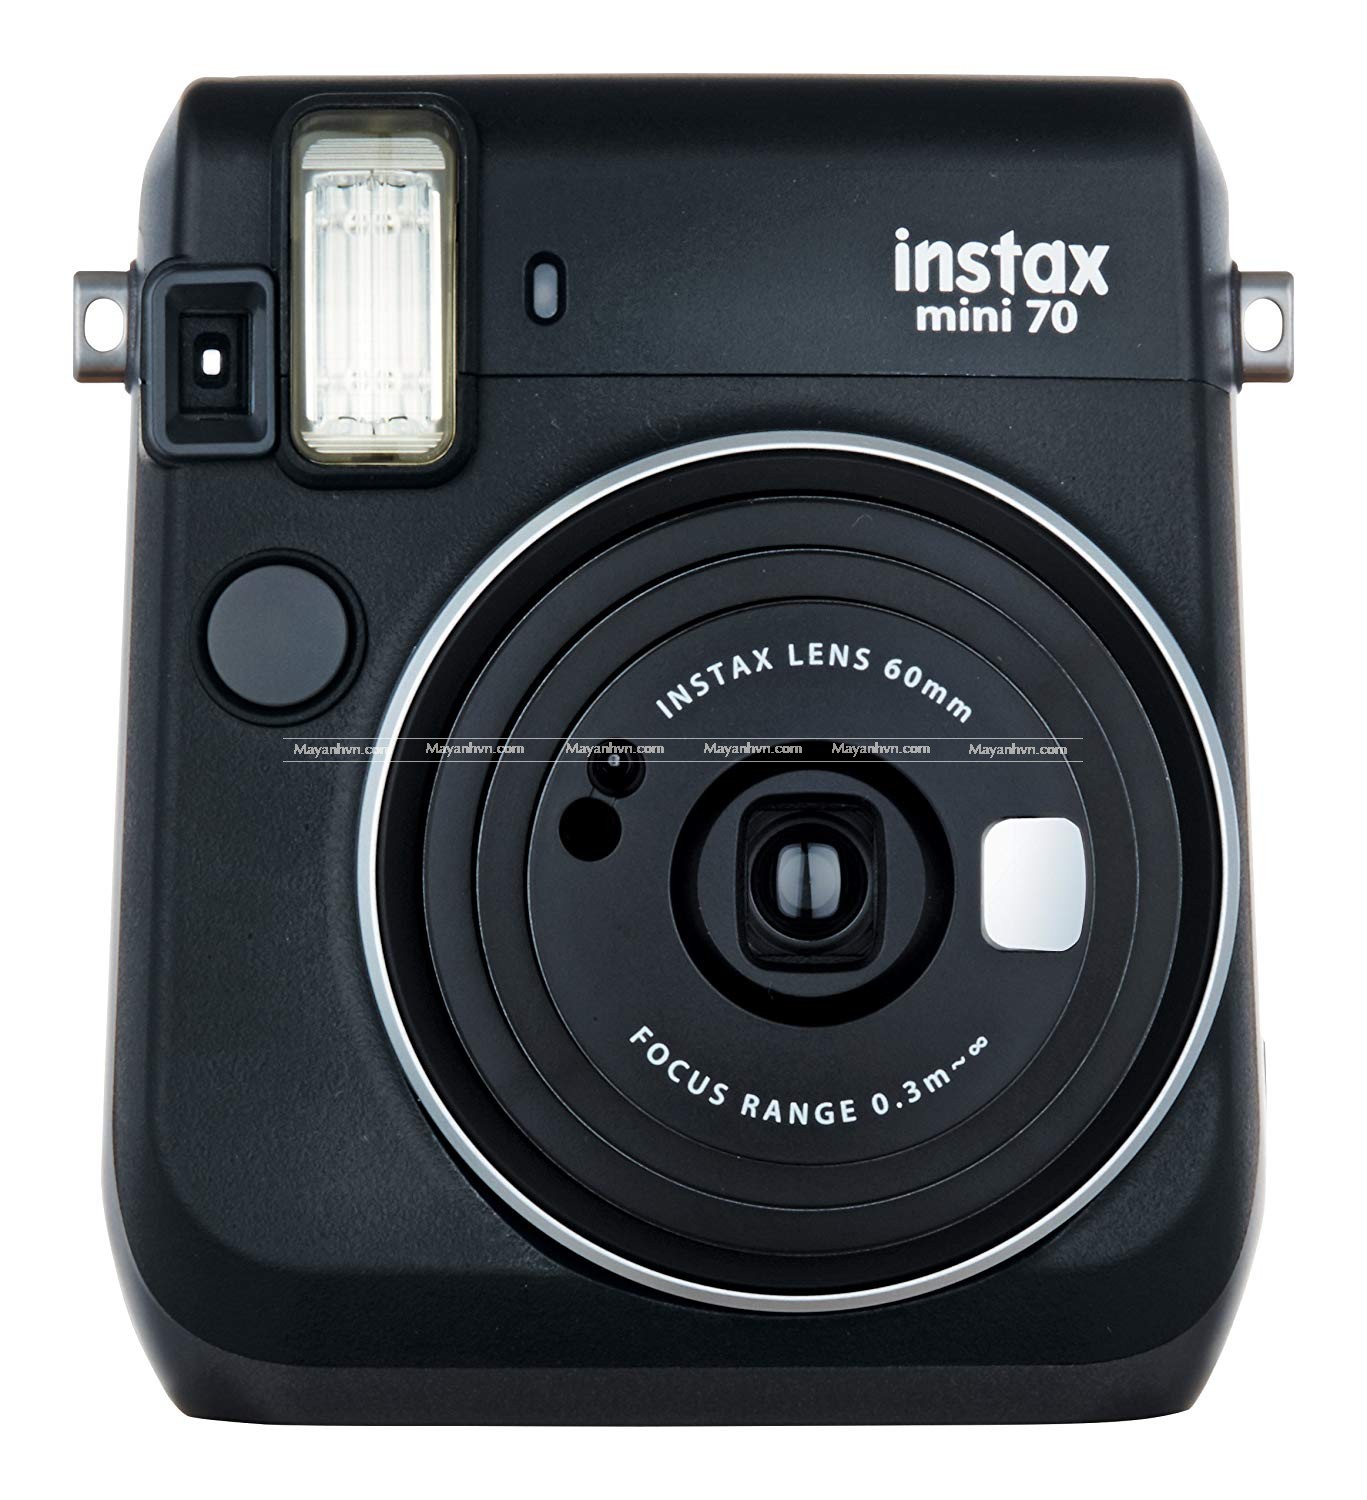 Máy ảnh Fujifilm Instax Mini 70 tạo nên sự sang trọng và tinh tế cho những bức ảnh của bạn. Không chỉ chất lượng ảnh tuyệt vời, chiếc máy này còn có nhiều tính năng hữu ích giúp bạn chụp và in ảnh nhanh chóng.